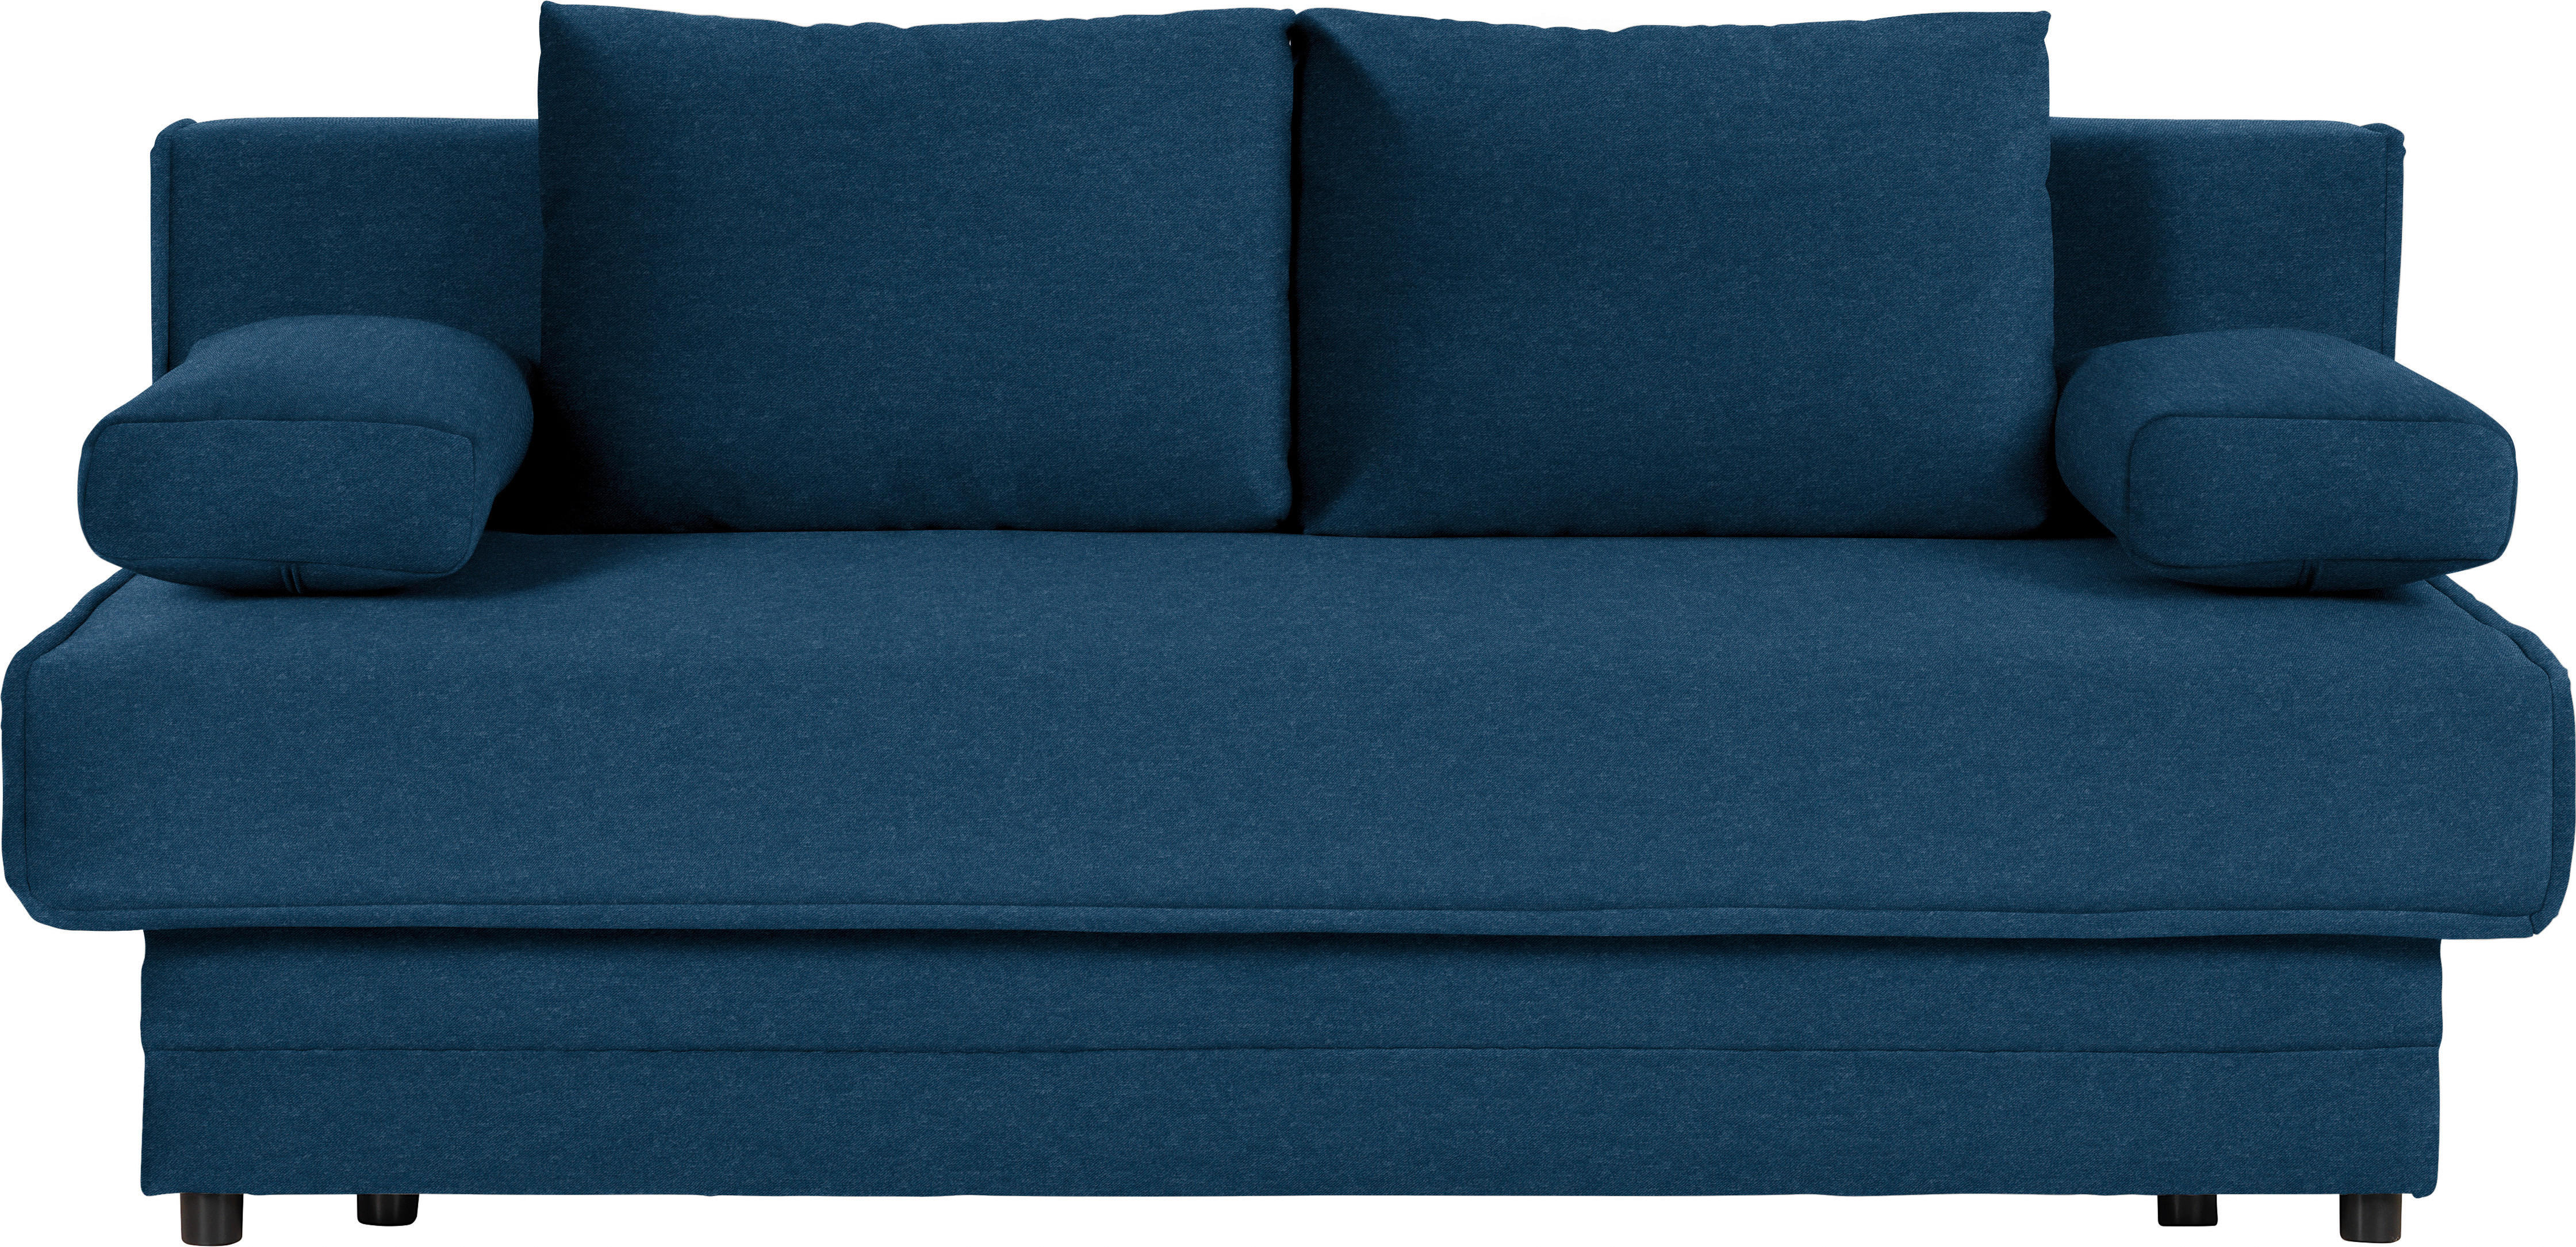 SCHLAFSOFA in Blau  - Blau, Design, Textil (200/90/100cm) - Novel